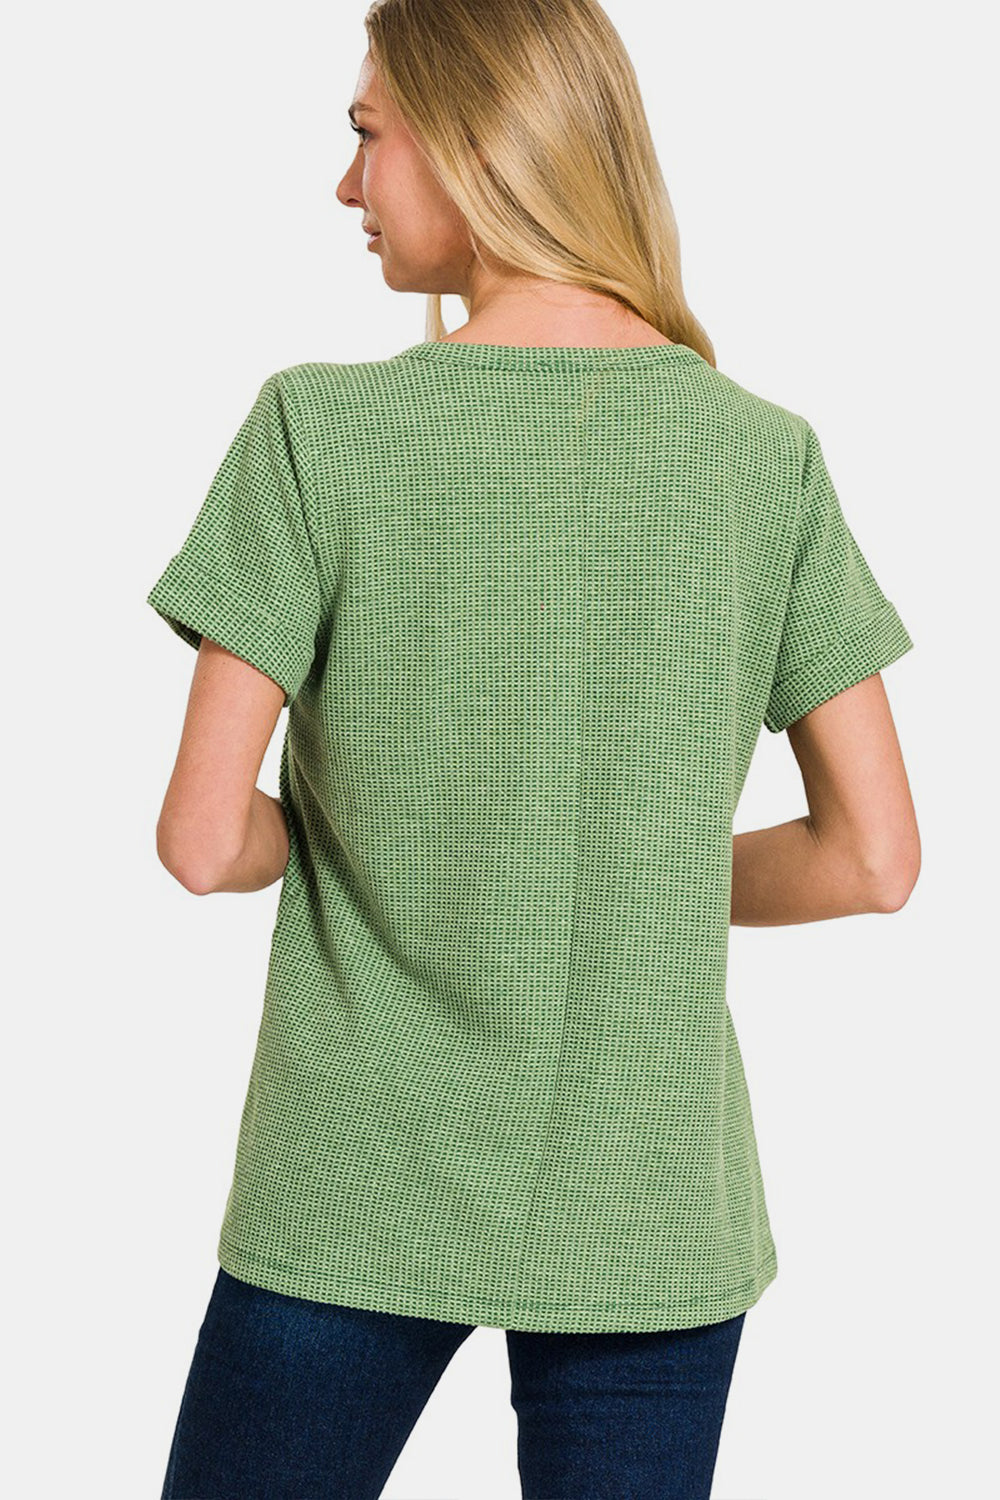 Zenana – Kurzärmliges T-Shirt mit Waffelmuster und Einkerbungen